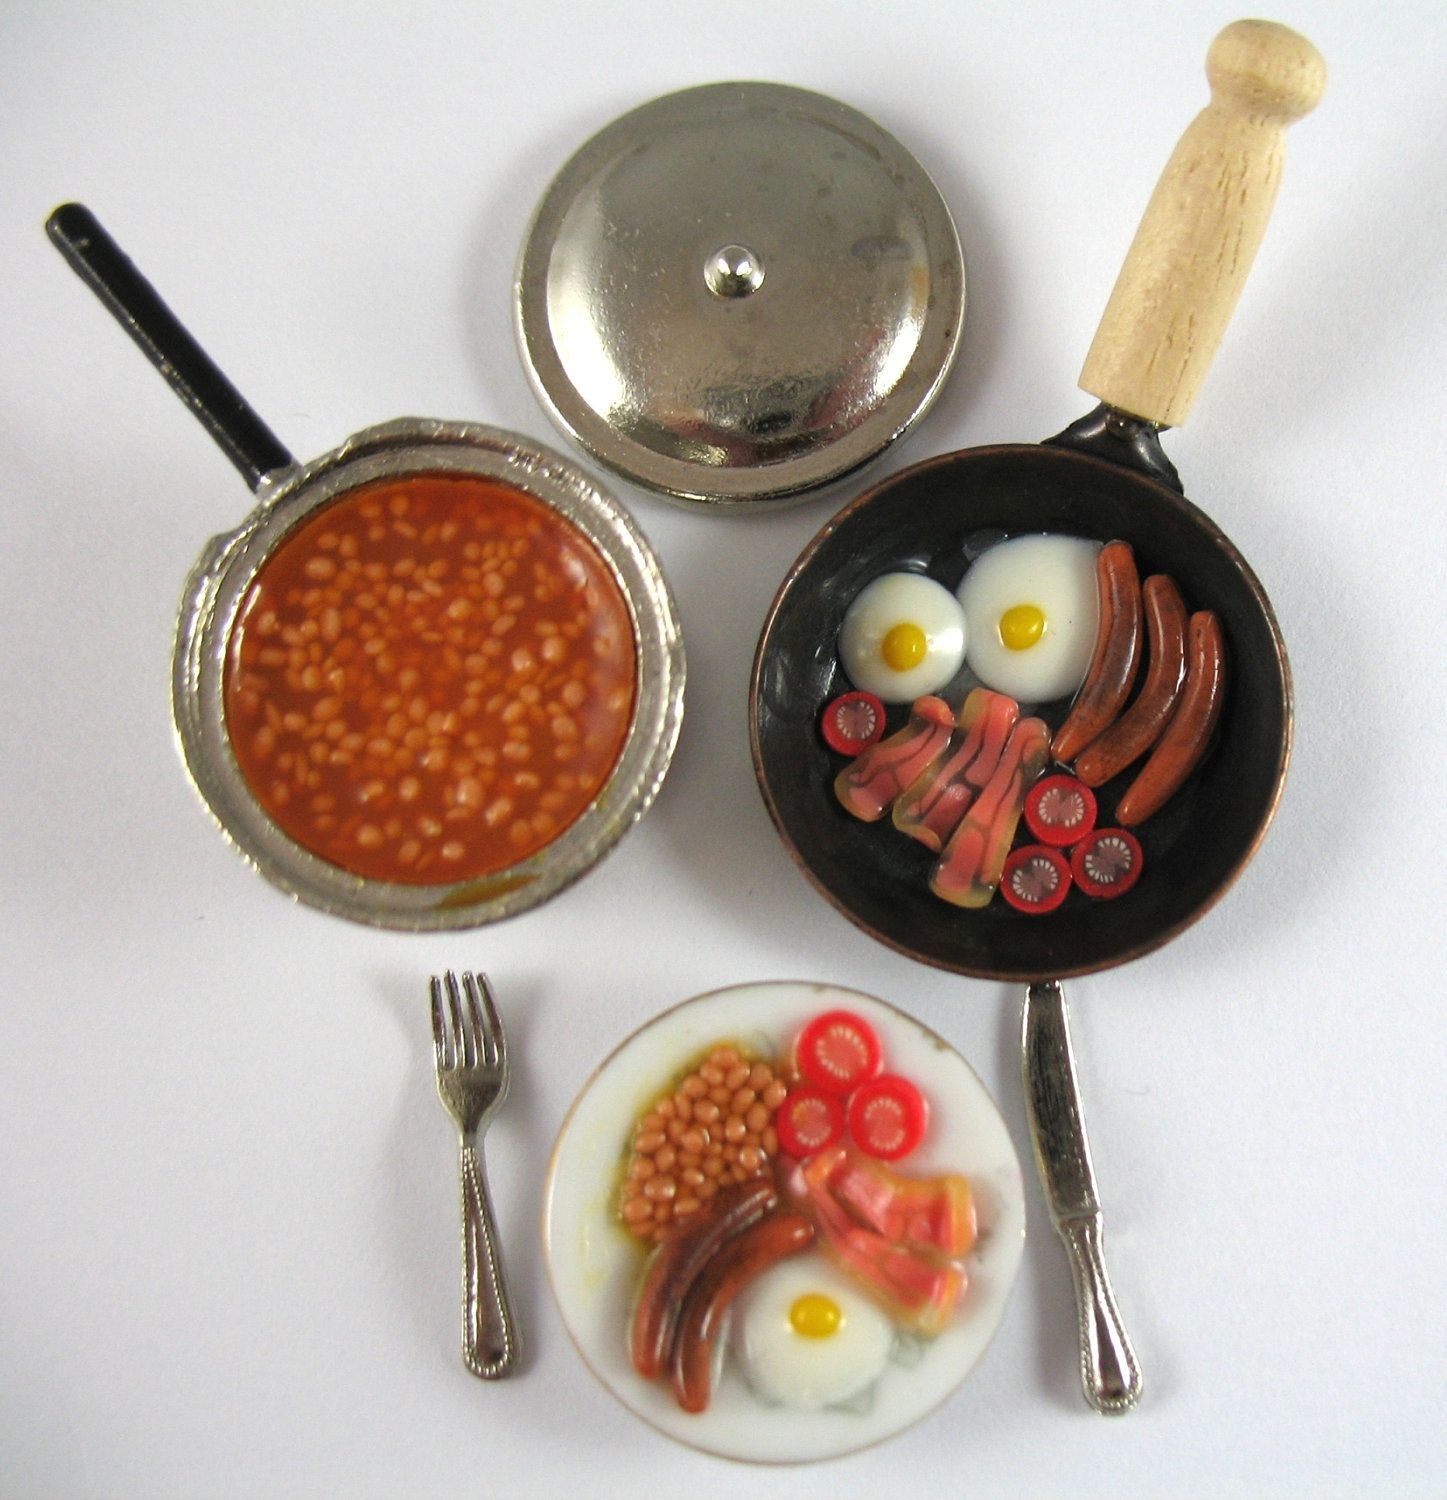 Dollhouse Miniature Food Fried Breakfast Set In 12th Scale Etsy 